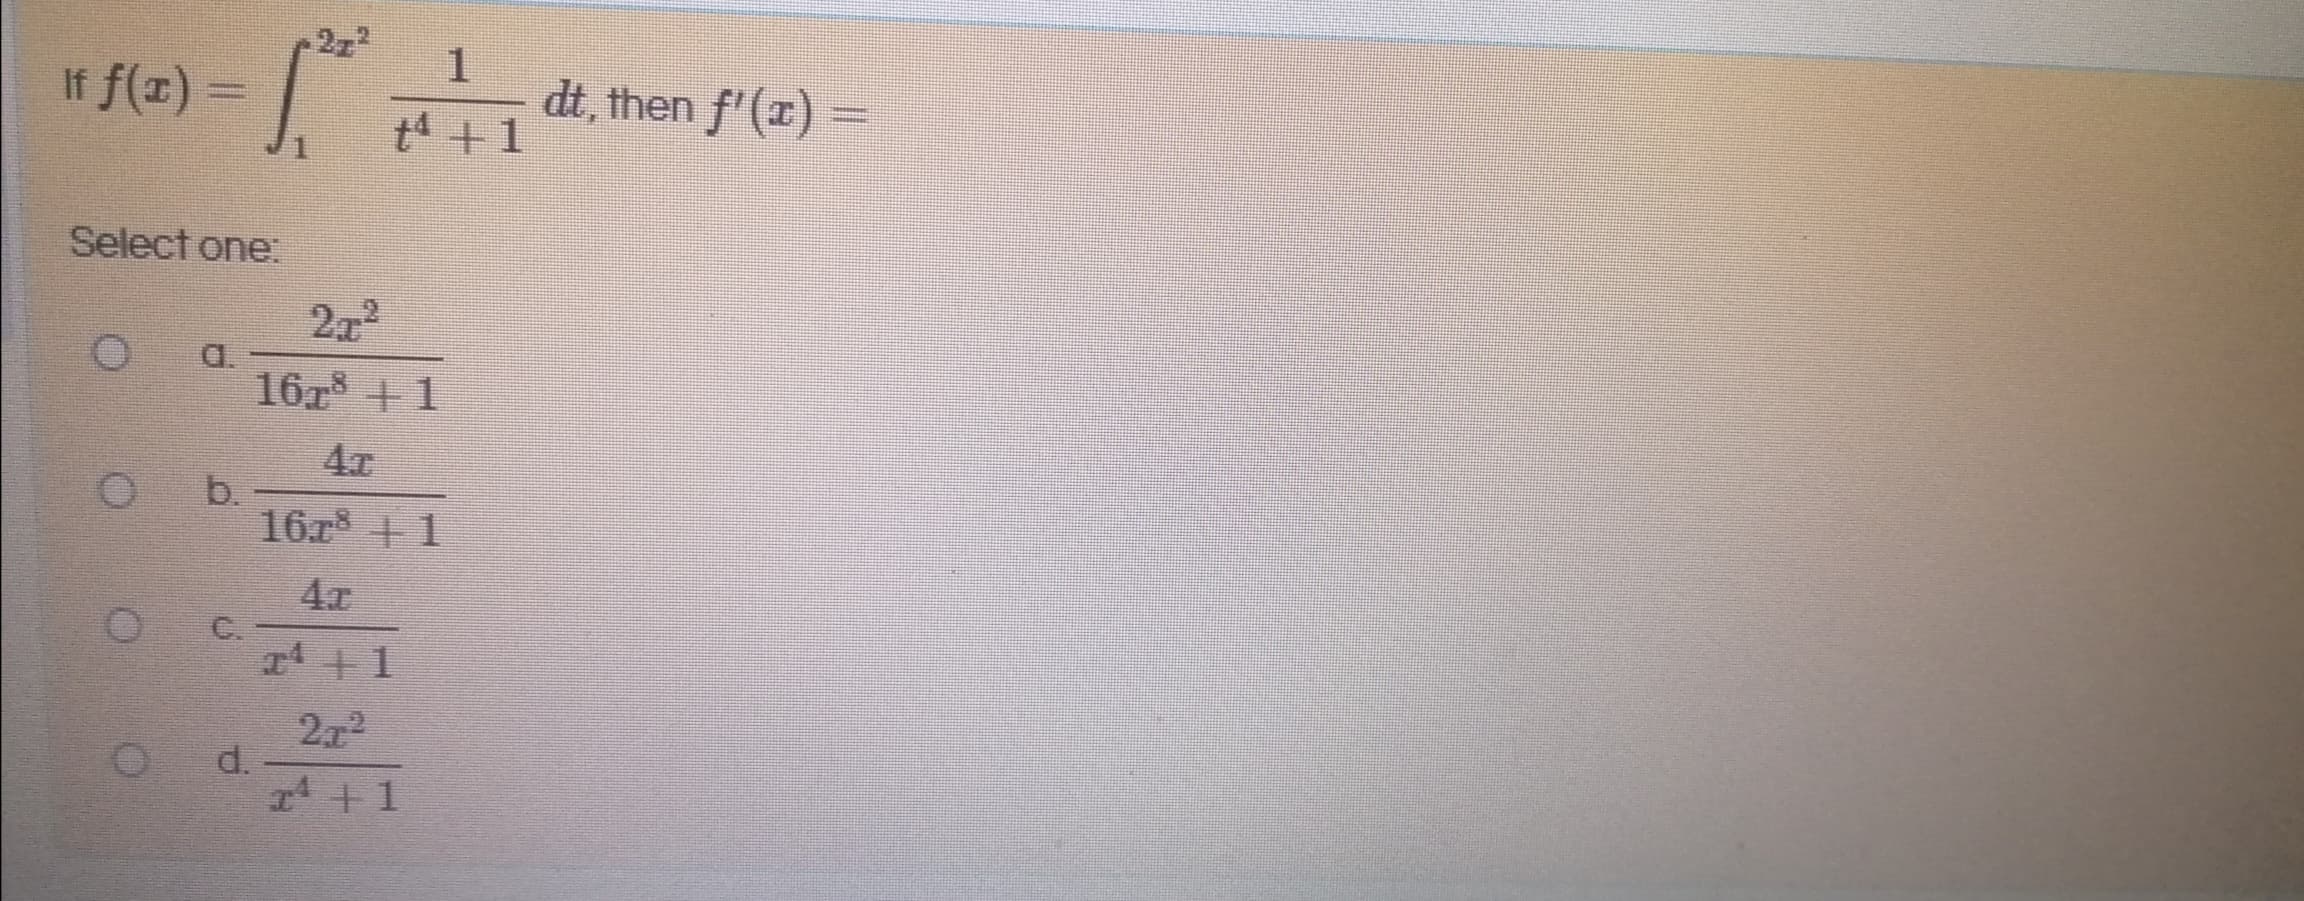 2z2
If f(x) =
|
dt, then f'(x) =
t +1
Select one:
222
a.
167 +1
b.
16r8 + 1
C.
4+1
272
d.
1 +1
